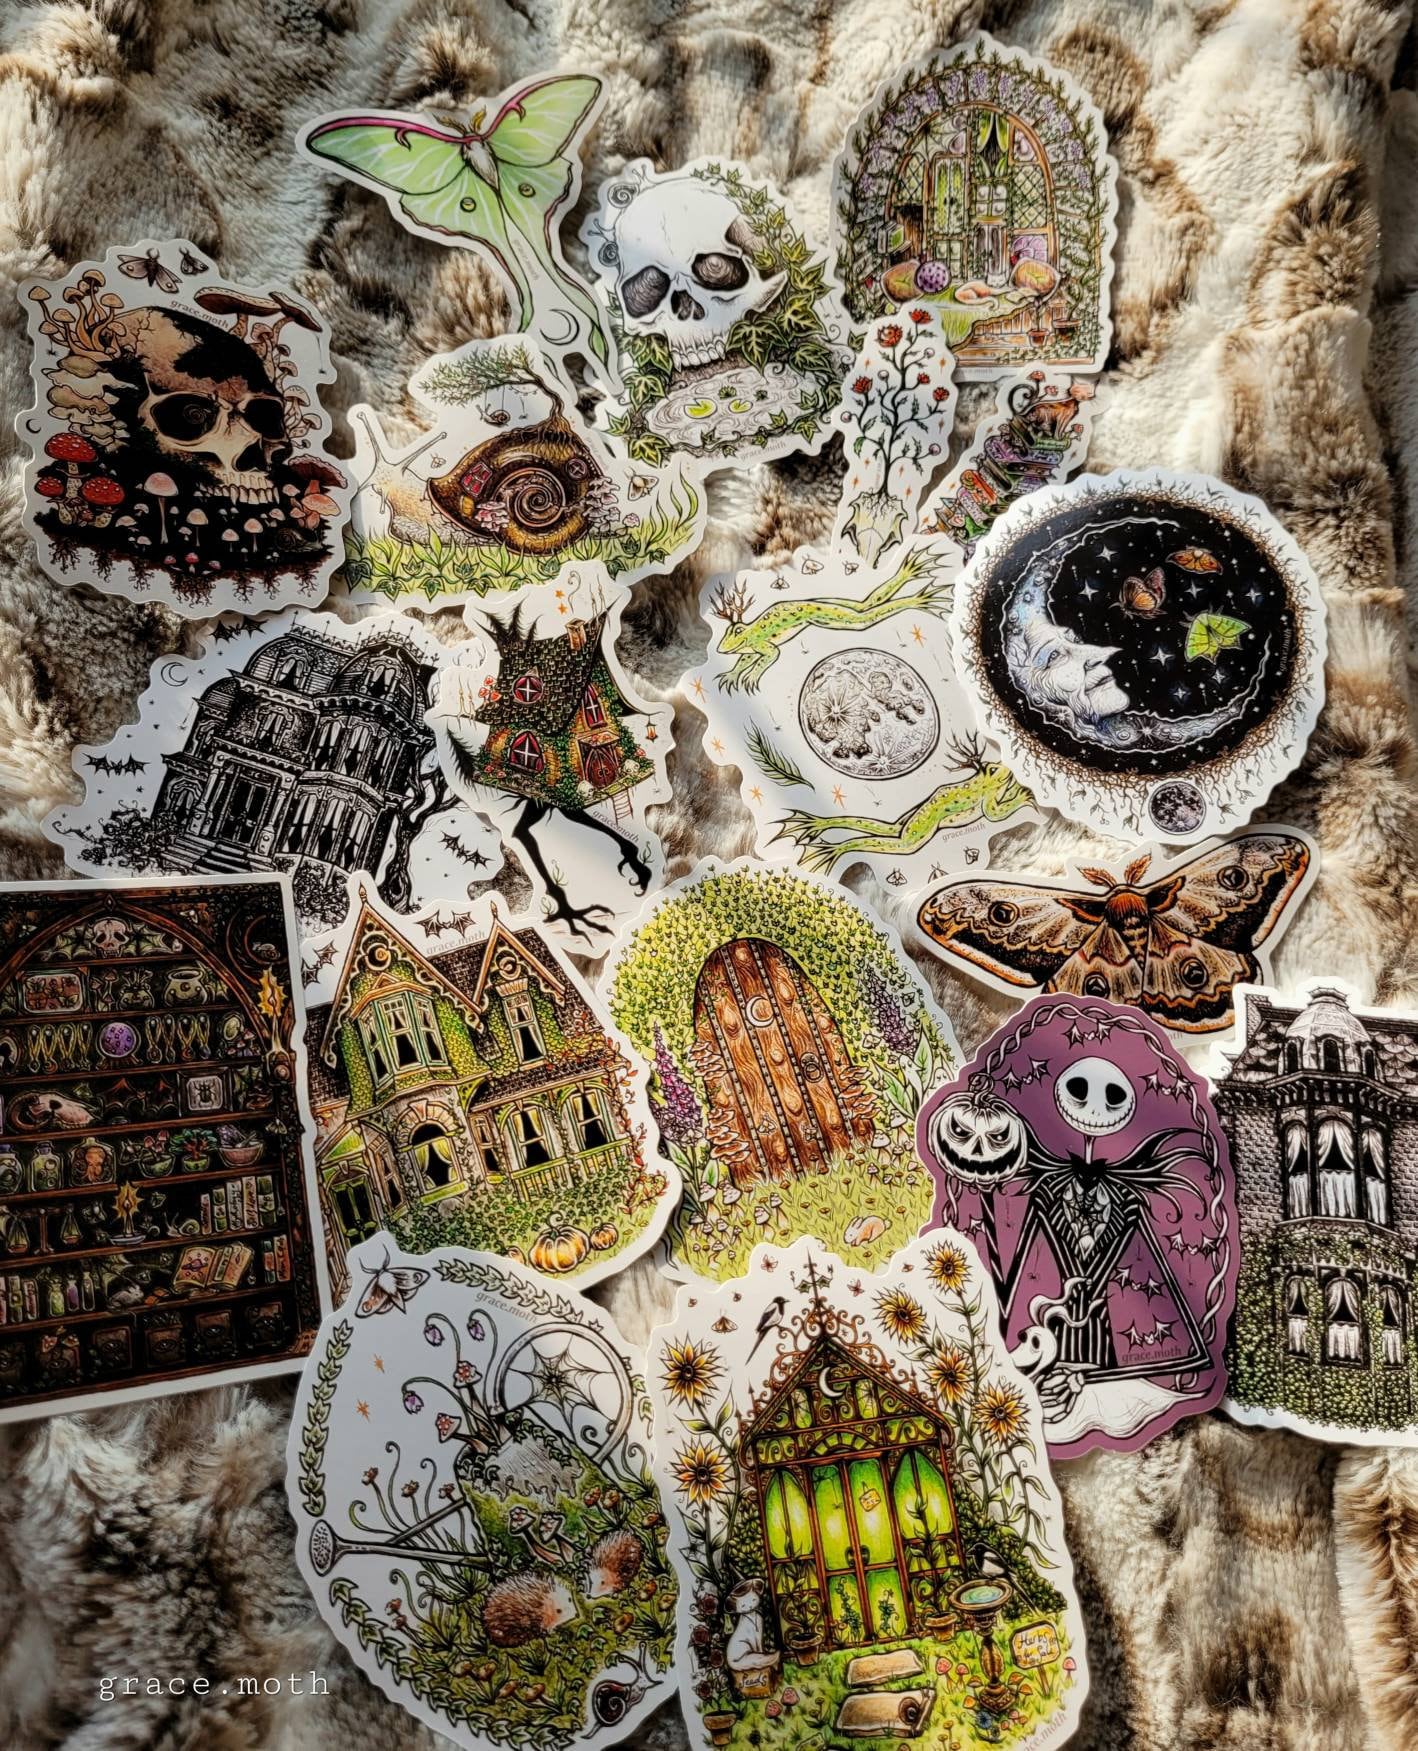 Ivy Skull - Vinyl Sticker 10cm by 8cm Illustrated by Grace moth. Gothic art, creepy, fantasy